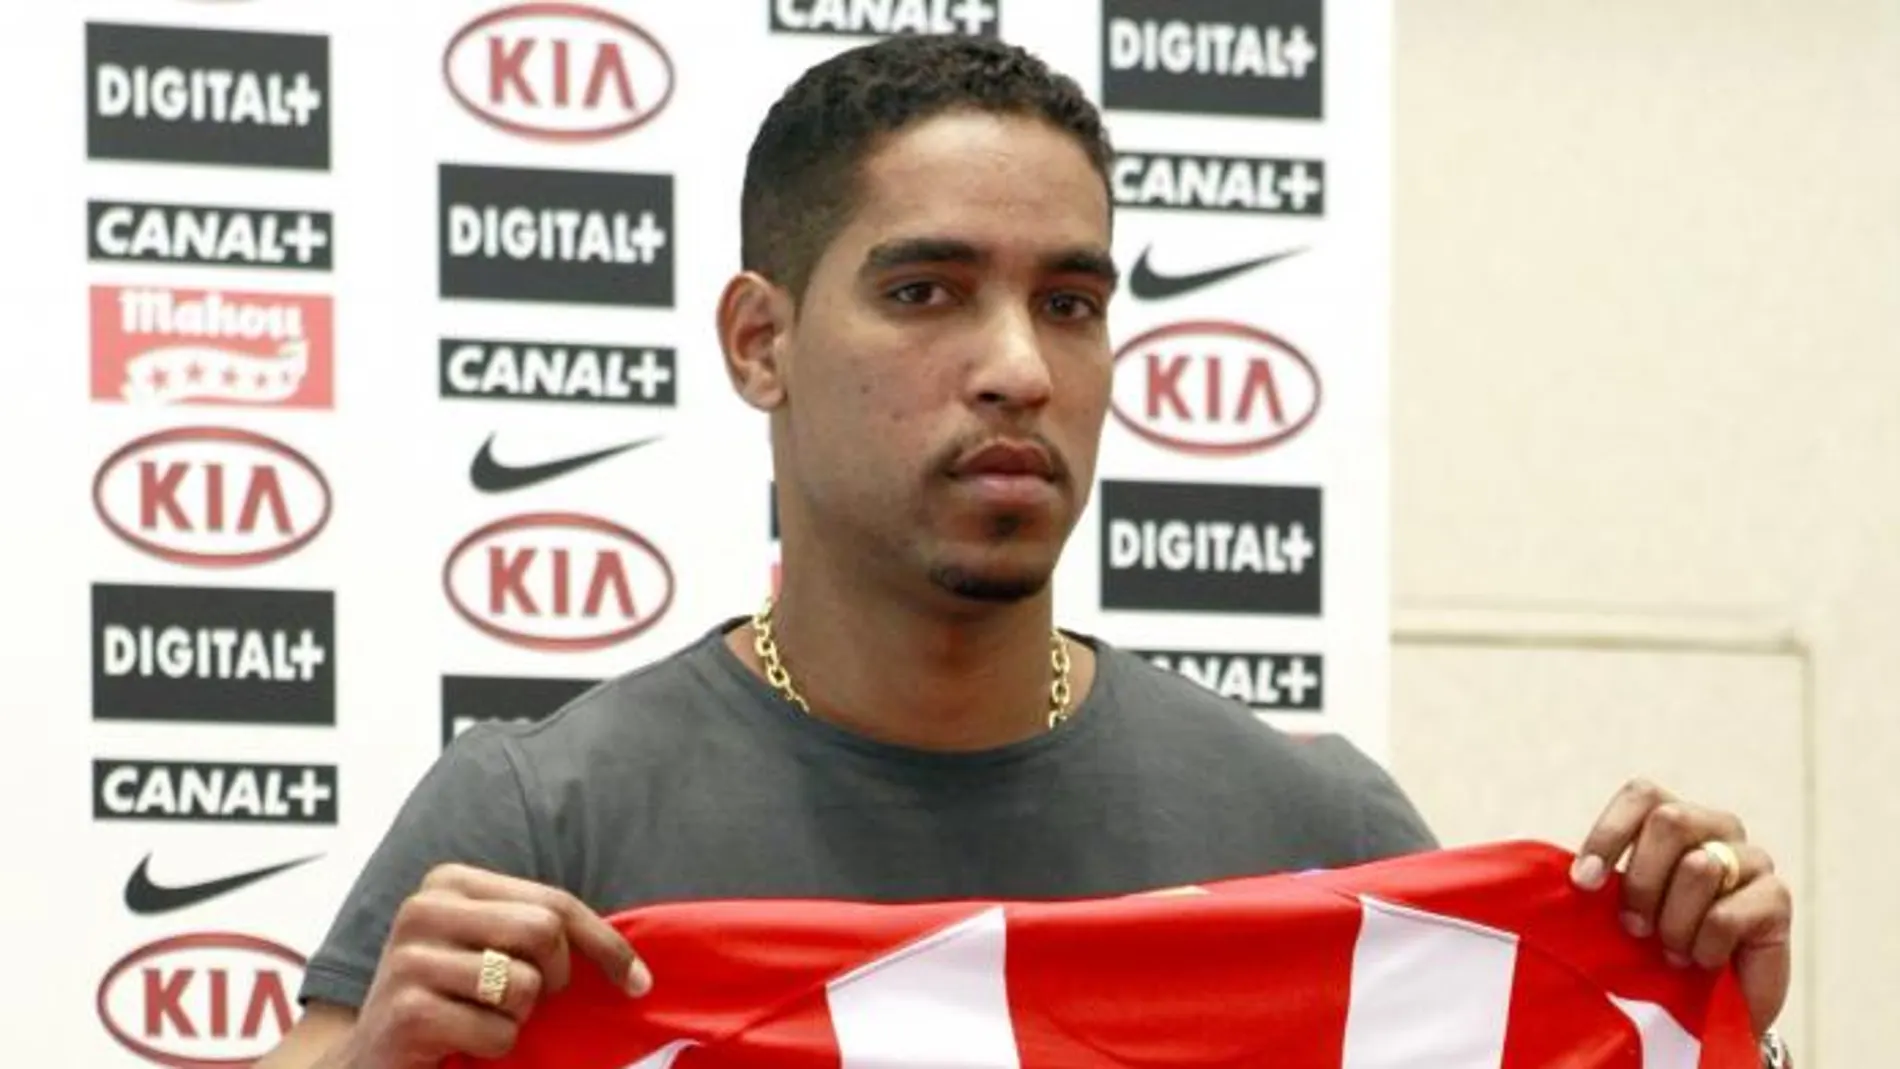 Fotografía de archivo, tomada el 9/7/2007, del jugador brasileño Cléber Santana el día de su presentación como jugador del Atlético de Madrid